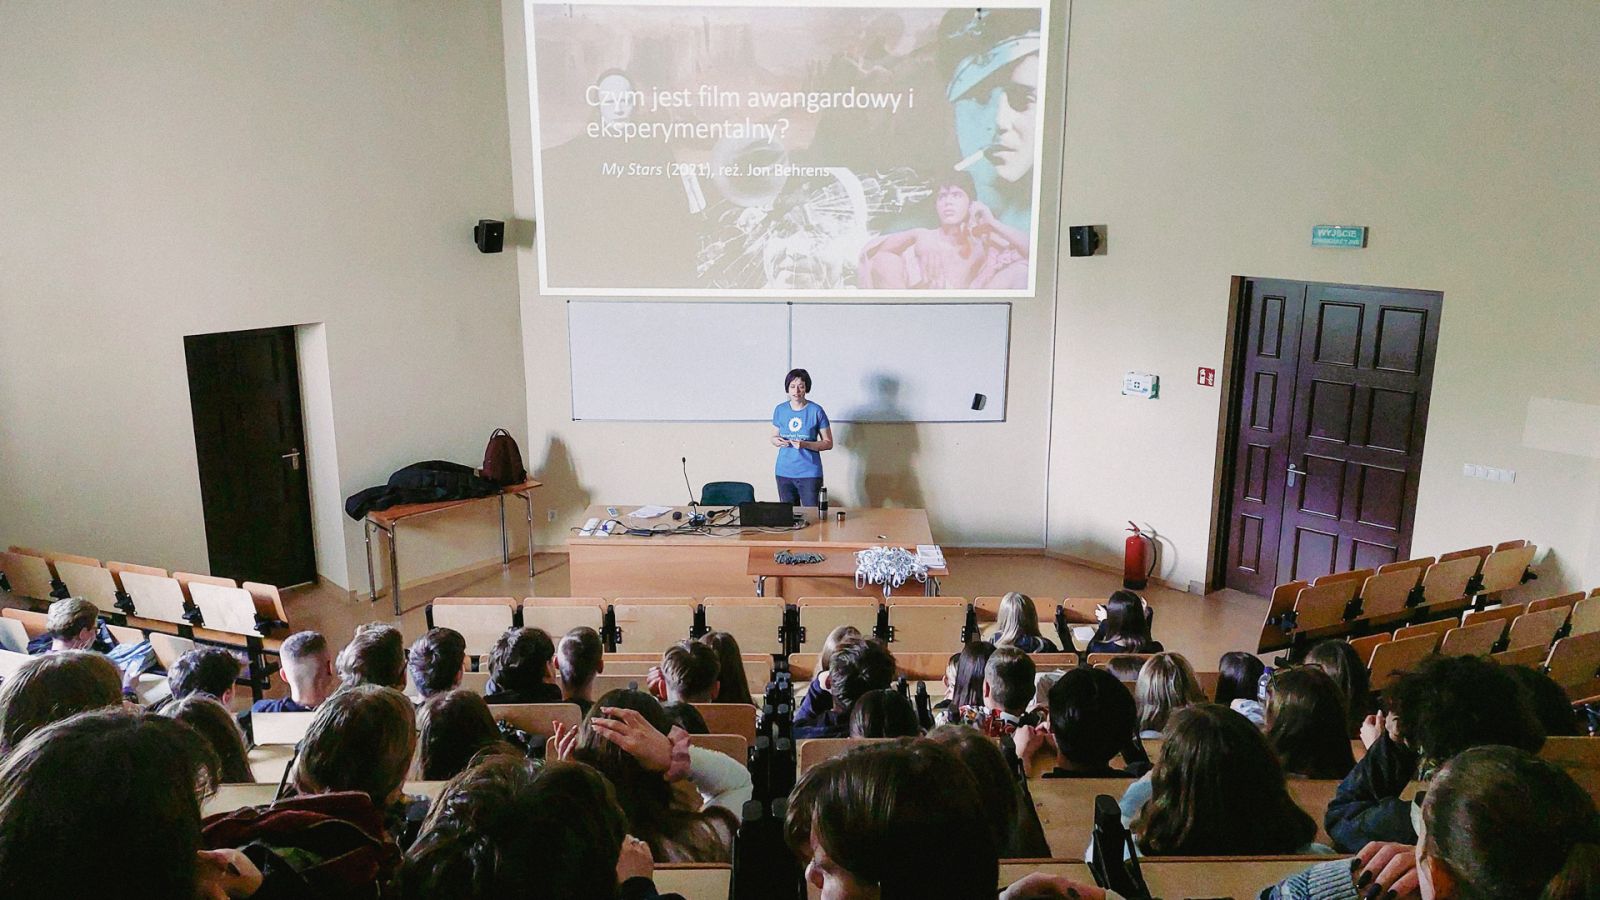 zdjęcie: osoba stojąca przed mównicą w sali wykładowej, na ścianie za nią slajd z prezentacji, przed nią publiczność siedząca w sali